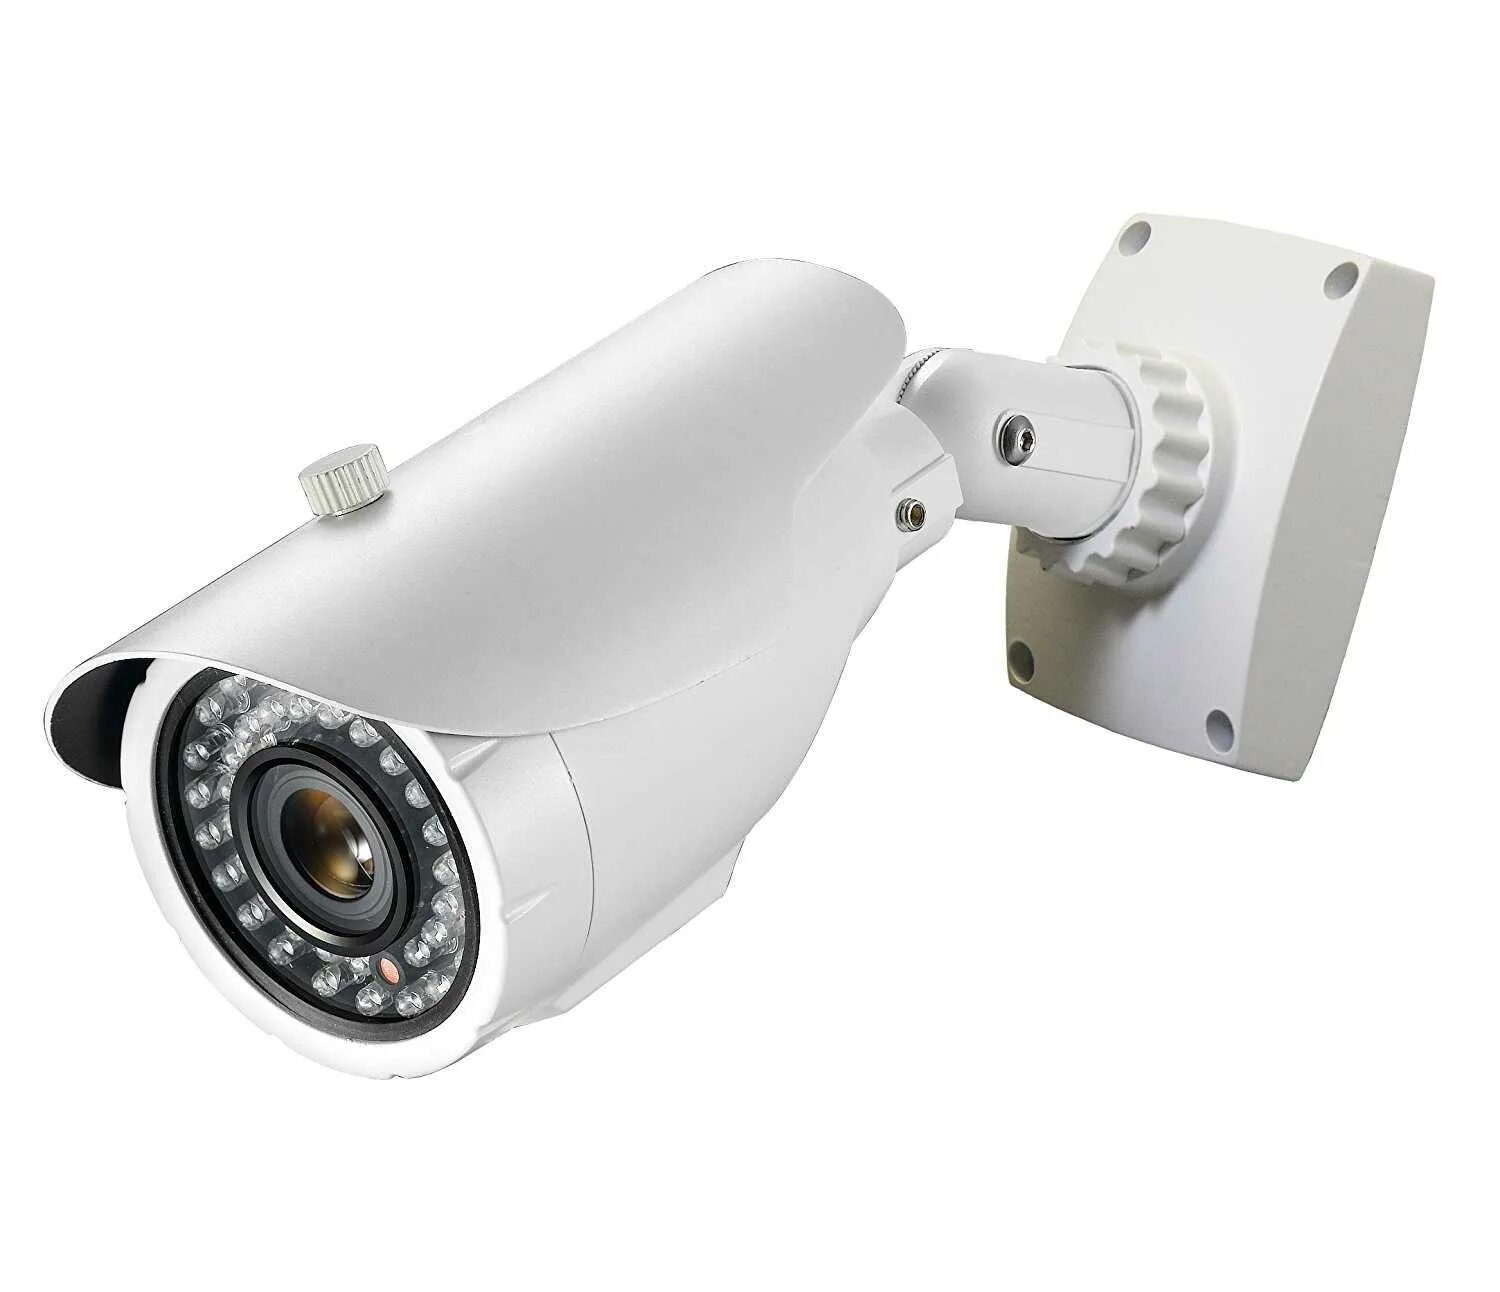 Черно белая камера видеонаблюдения. Камера видеонаблюдения xl63m. Камера видеонаблюдения r1004p. Камера видеонаблюдения (26.40.33.110-00006). Видеокамера EVS-642che3 700 ТВЛ.